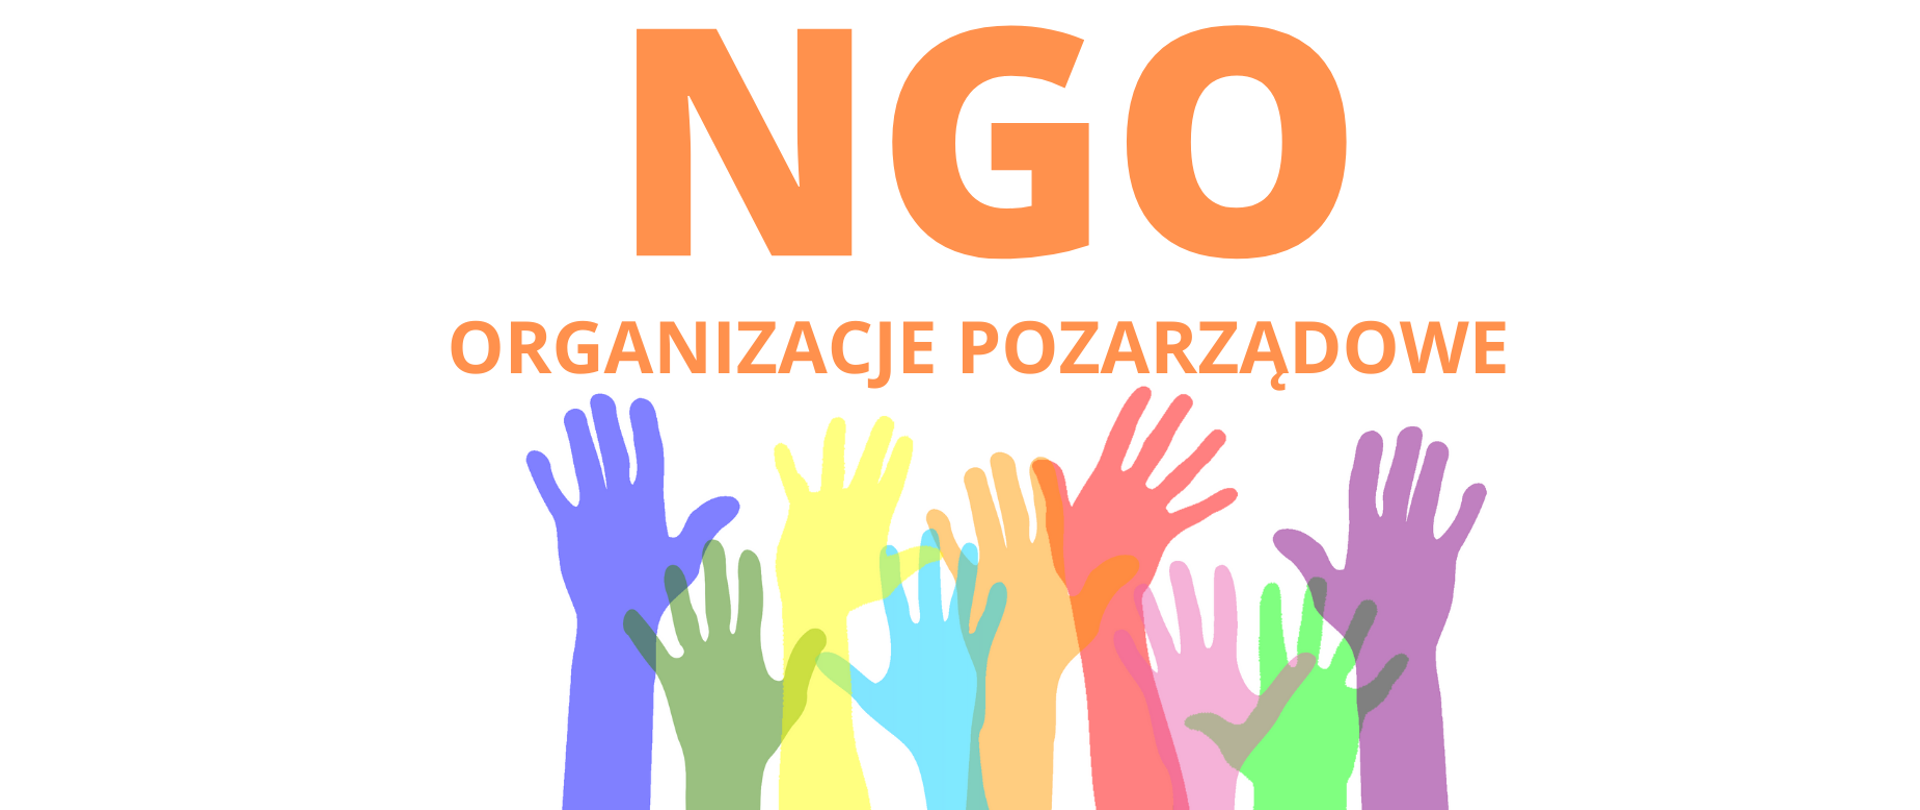 Tekst: "NGO Organizacje pozarządowe", poniżej kolorowe dłonie.